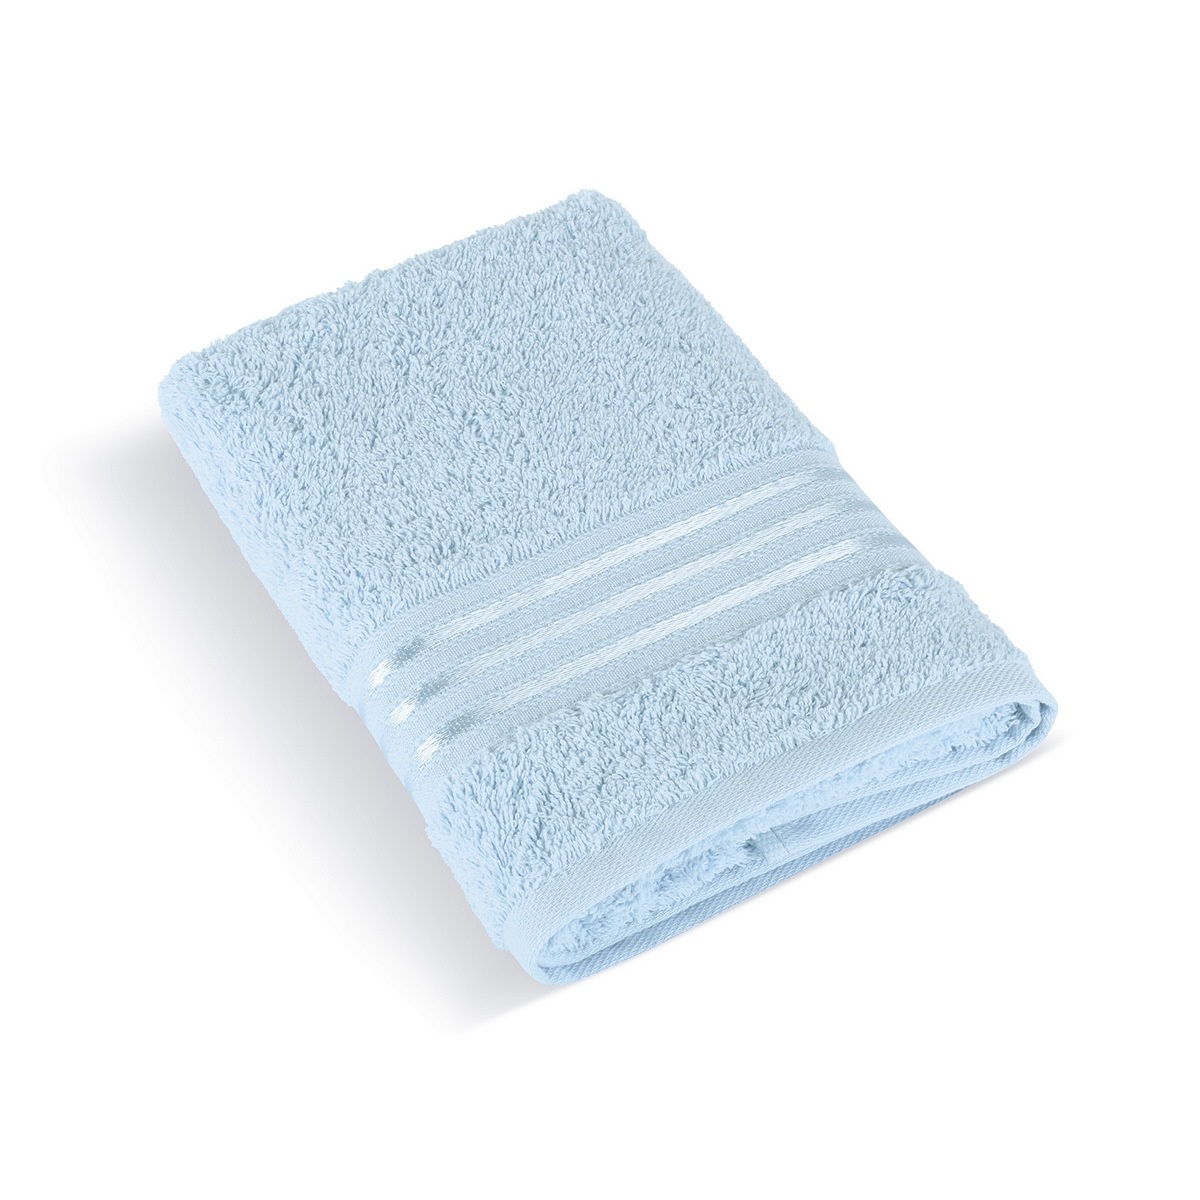 Bellatex Froté ručník kolekce Linie světle modrá